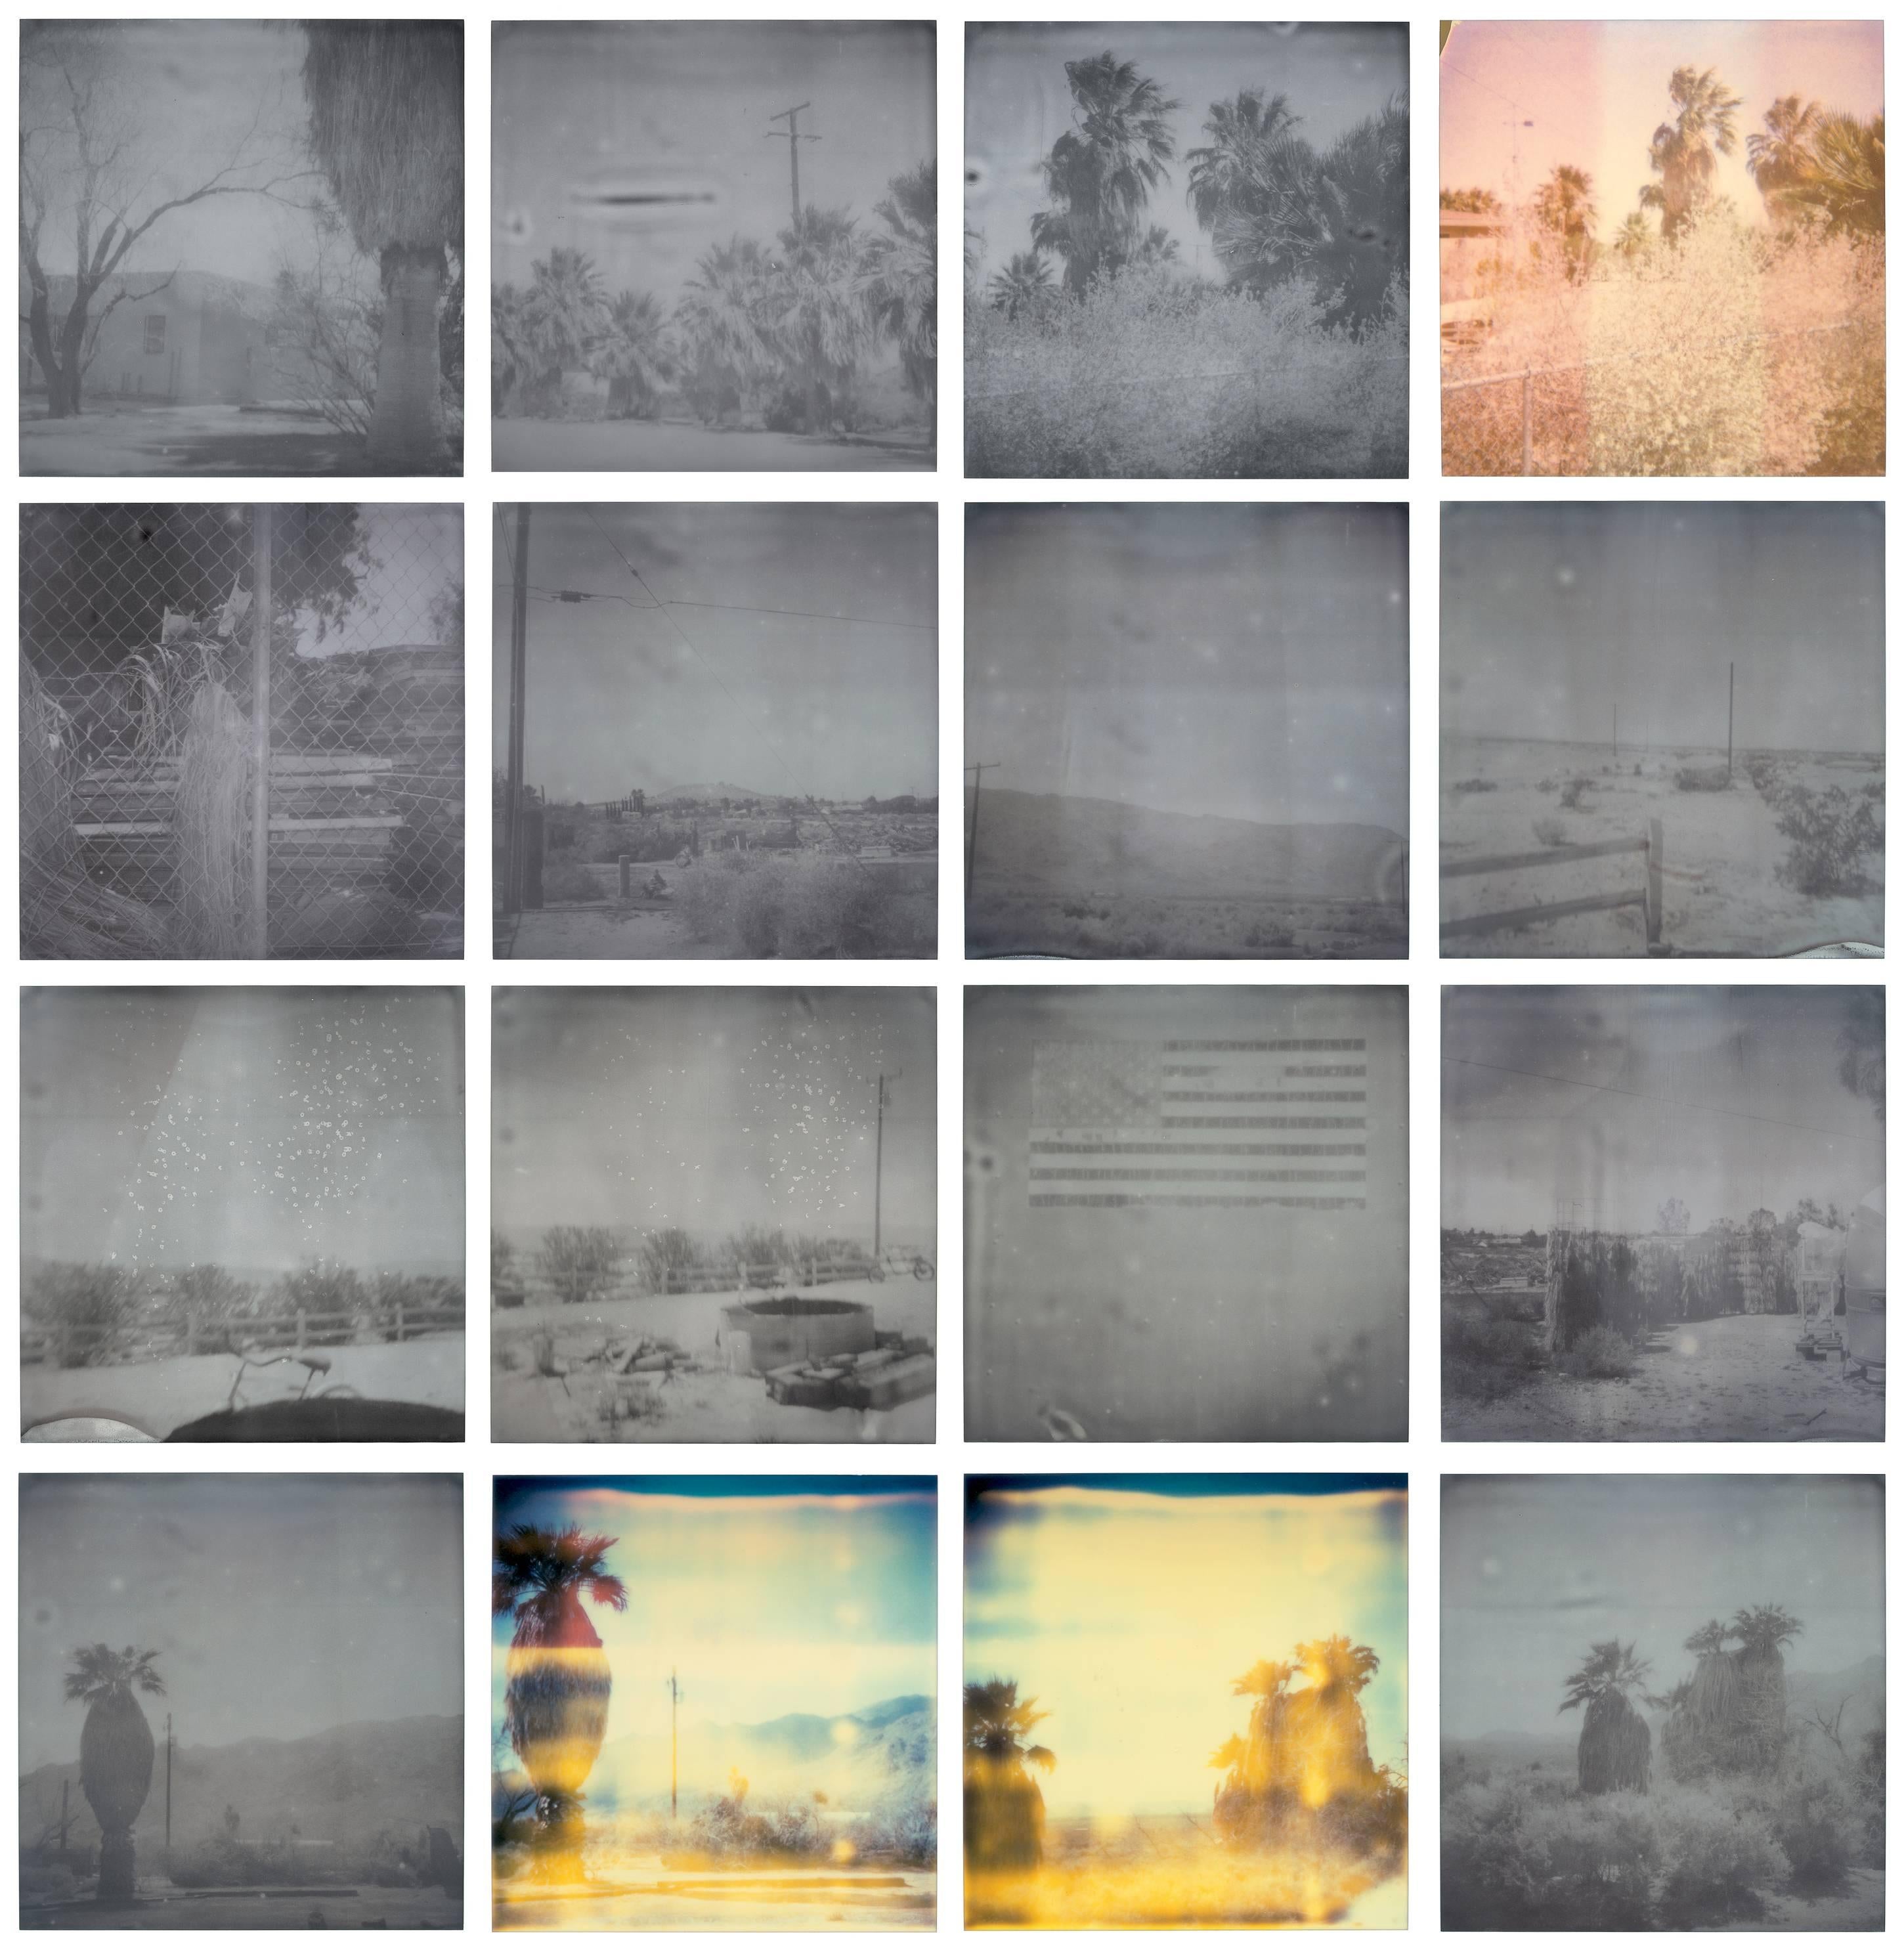 Oasis (Sidewinder) - 21st Century, Contemporary, Polaroid, Landscape - Photograph by Stefanie Schneider